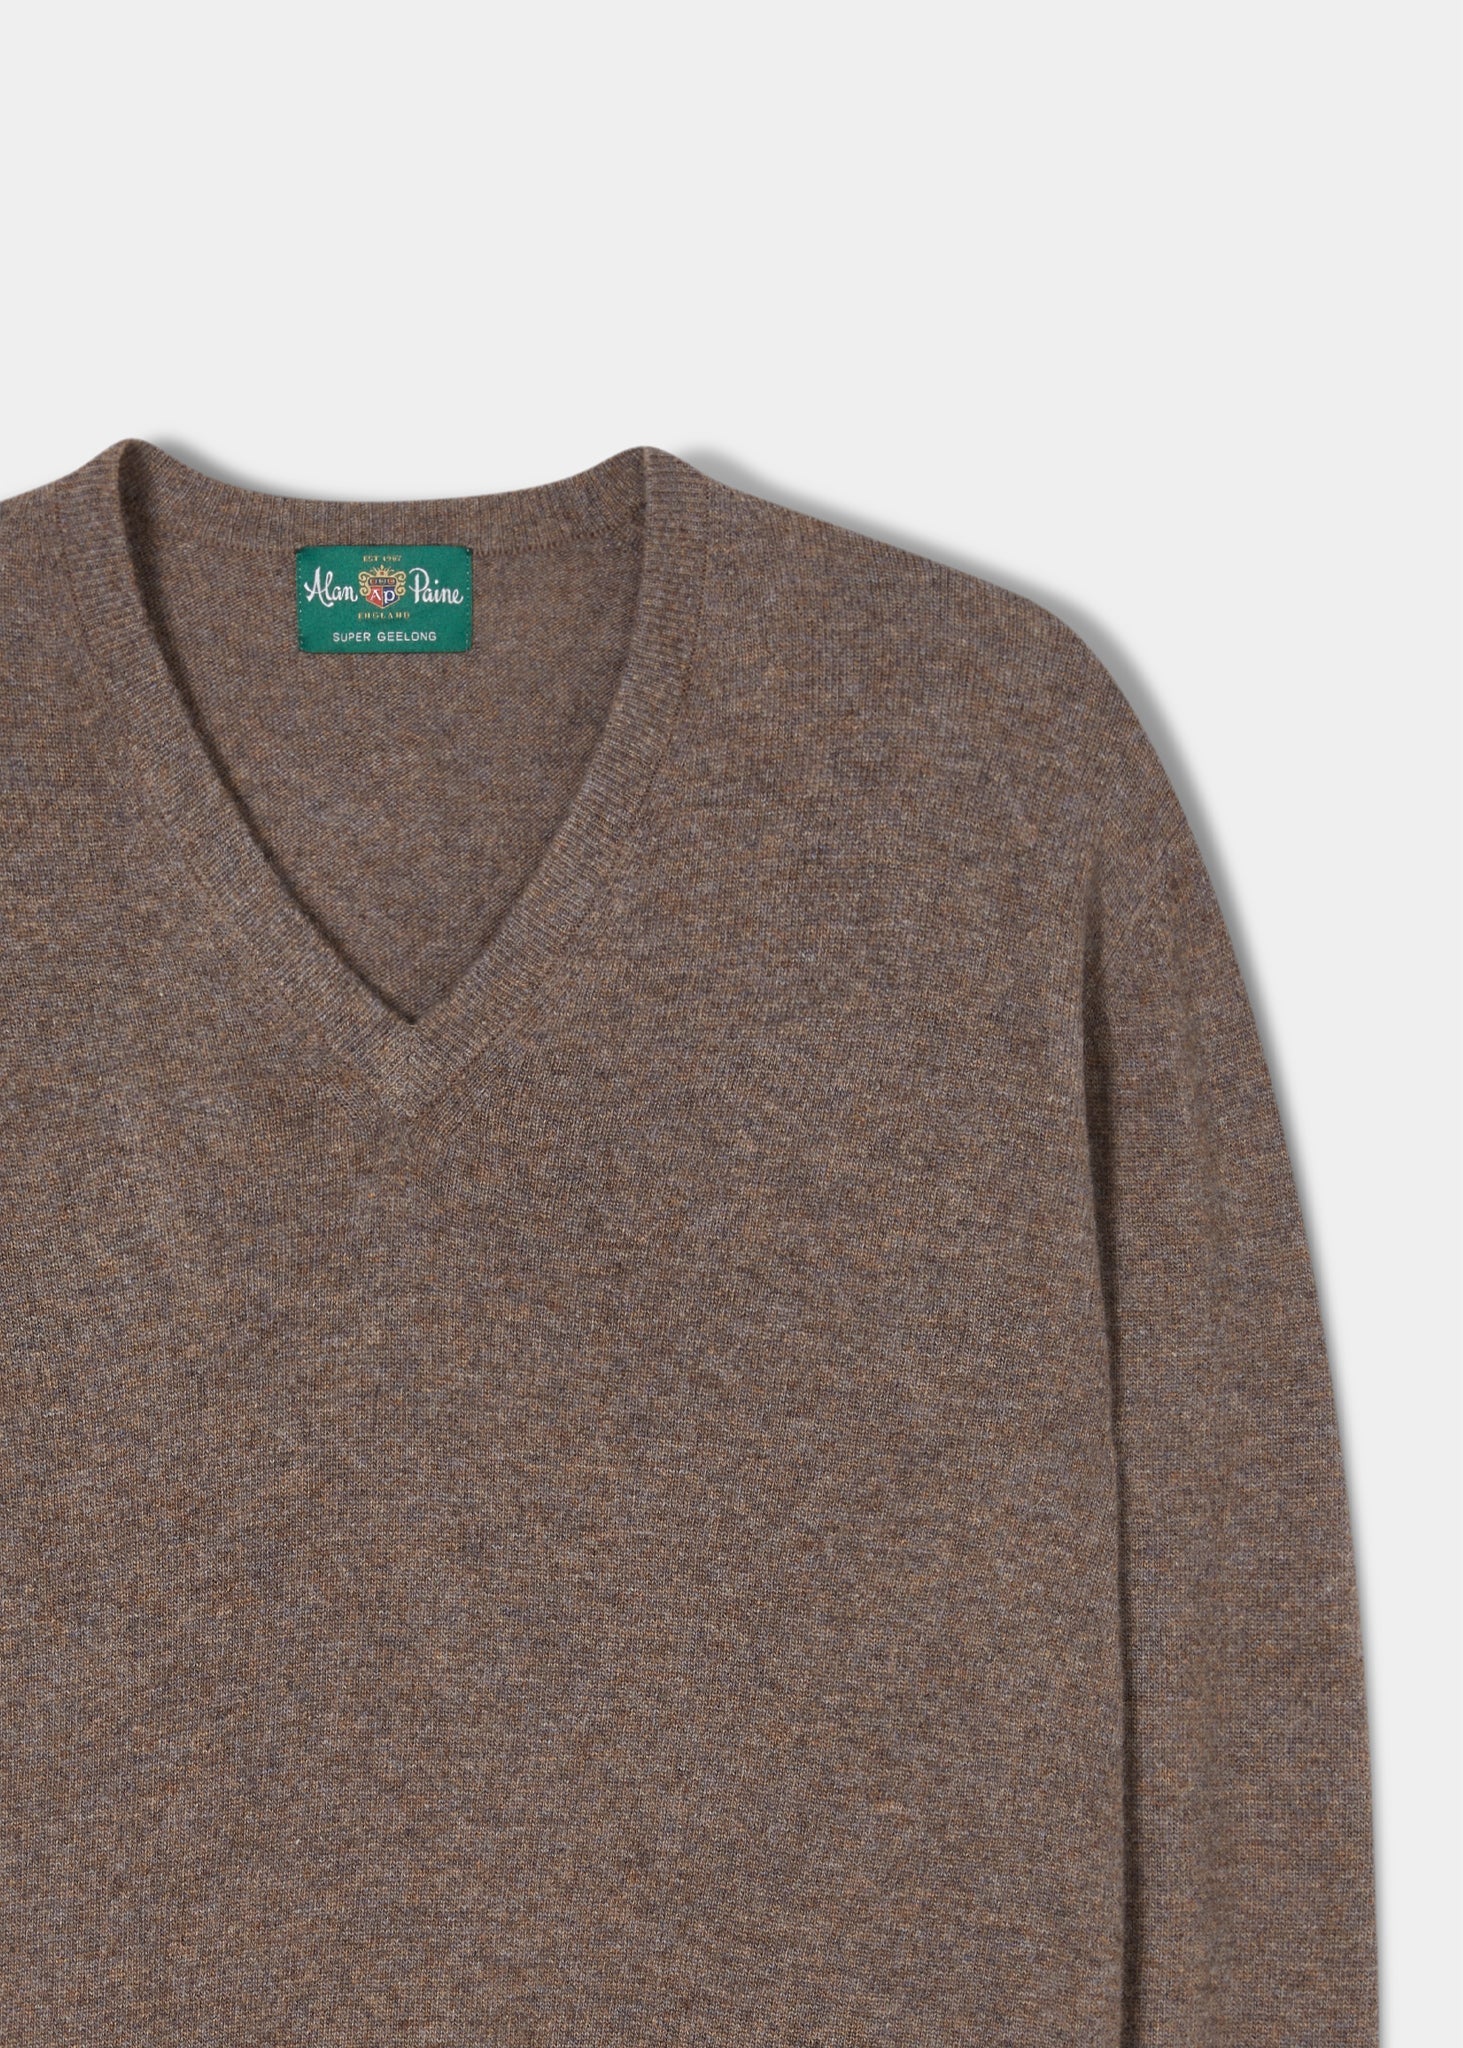 Geelong-Wool-Sweater-Teak